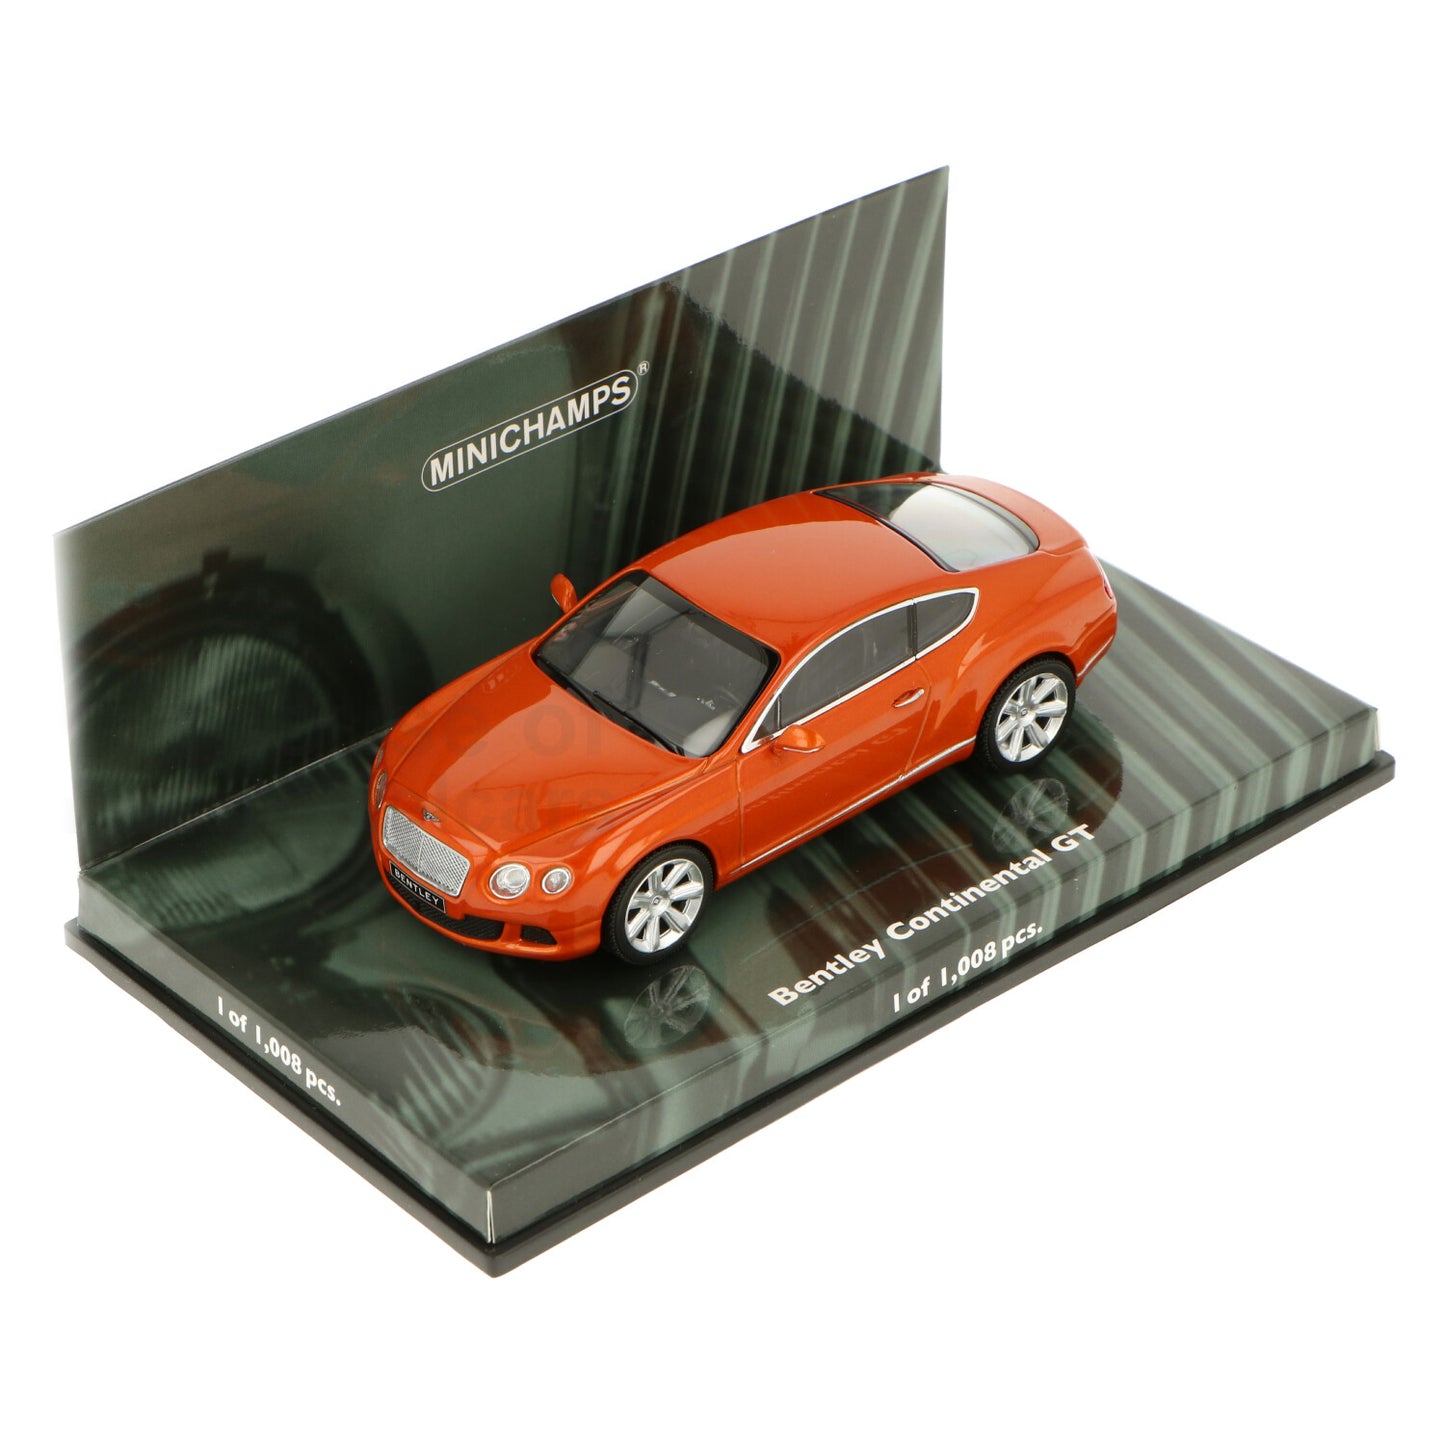 Minichamps 1:43 Bentley Continental GT 2011 Orange Metallic 436139981